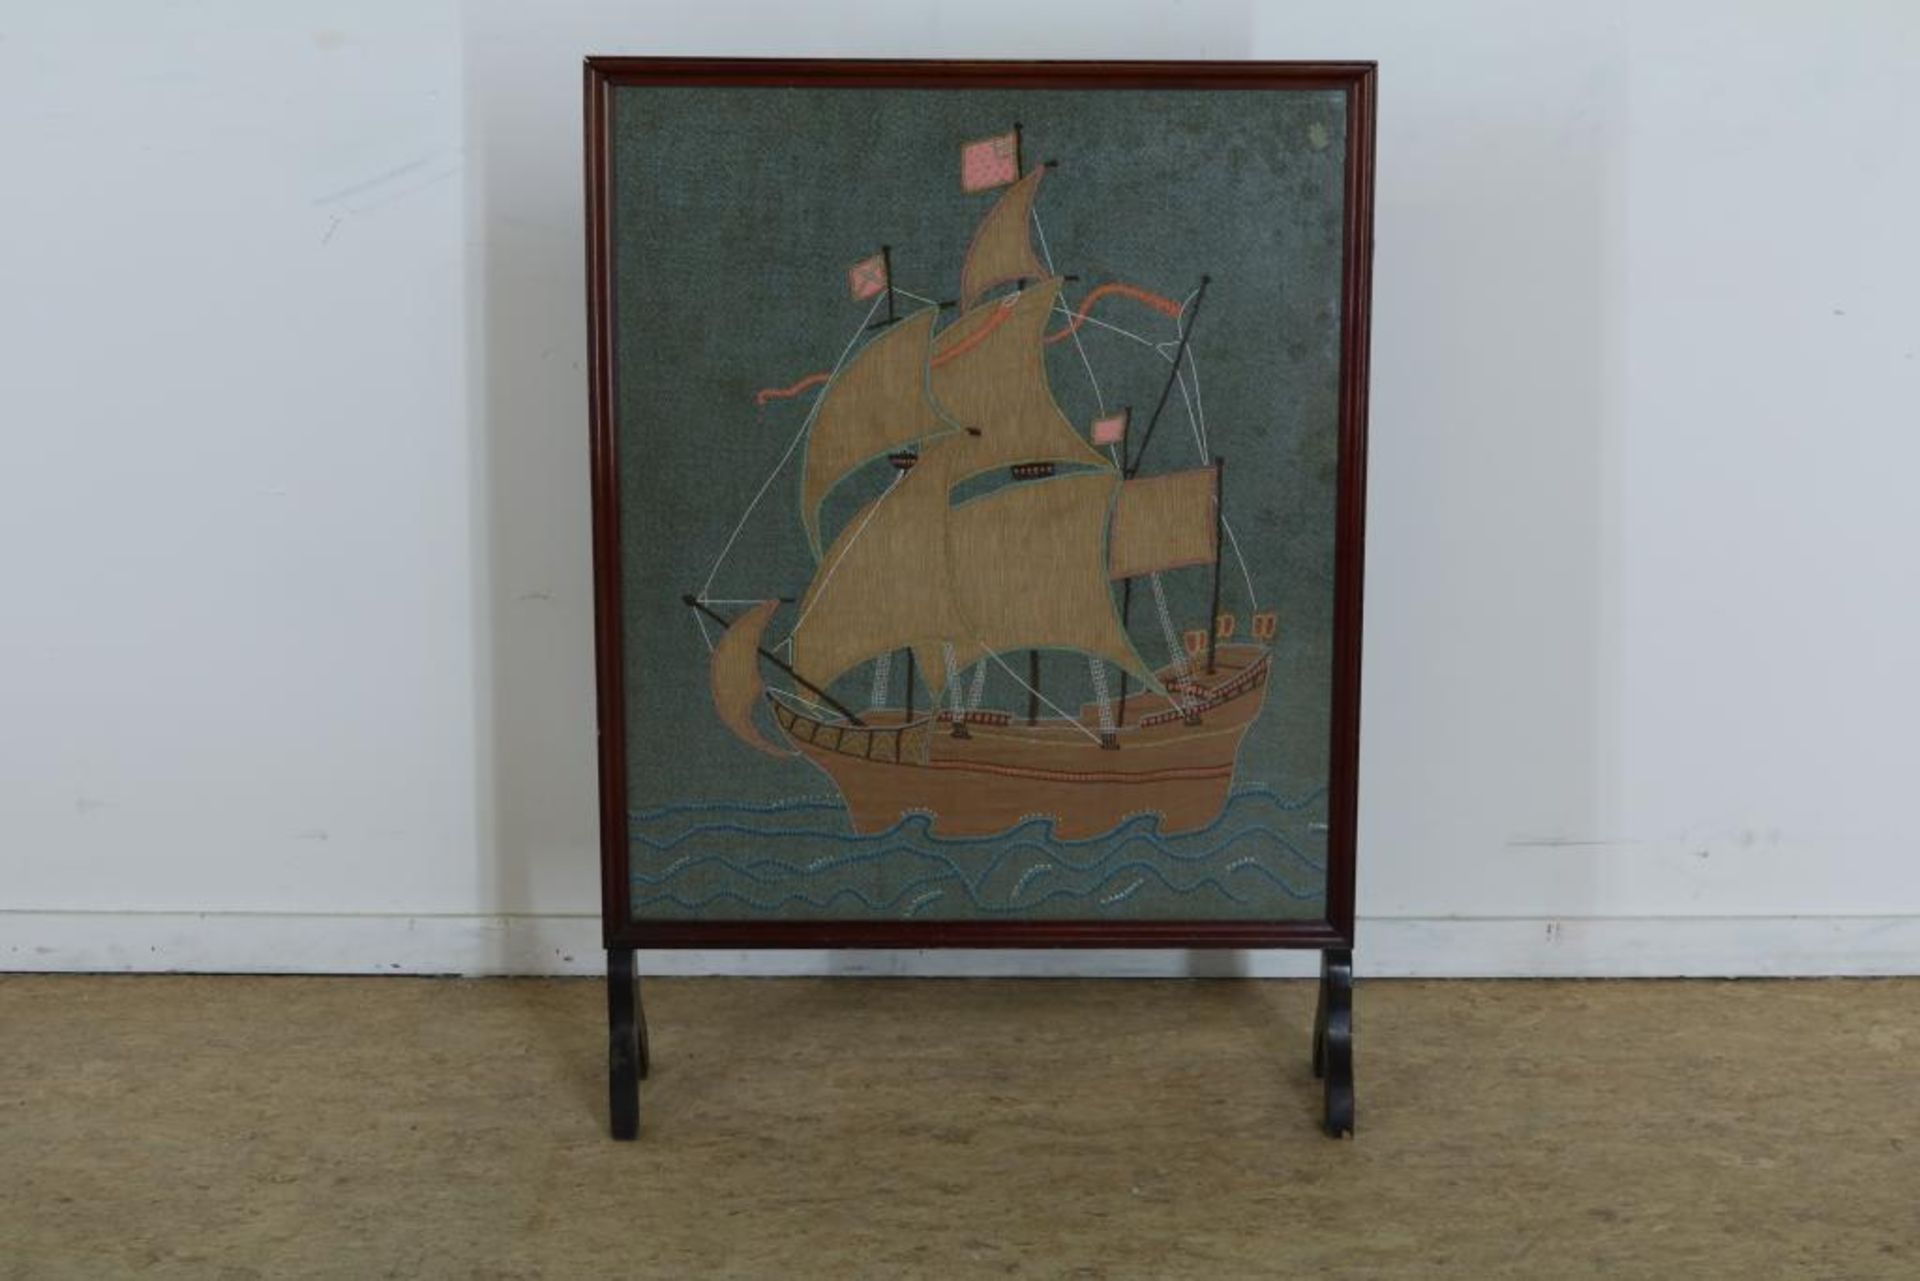 Mahonie haardscherm met geborduurde decoratie van zeilschip, h. 86 cm.